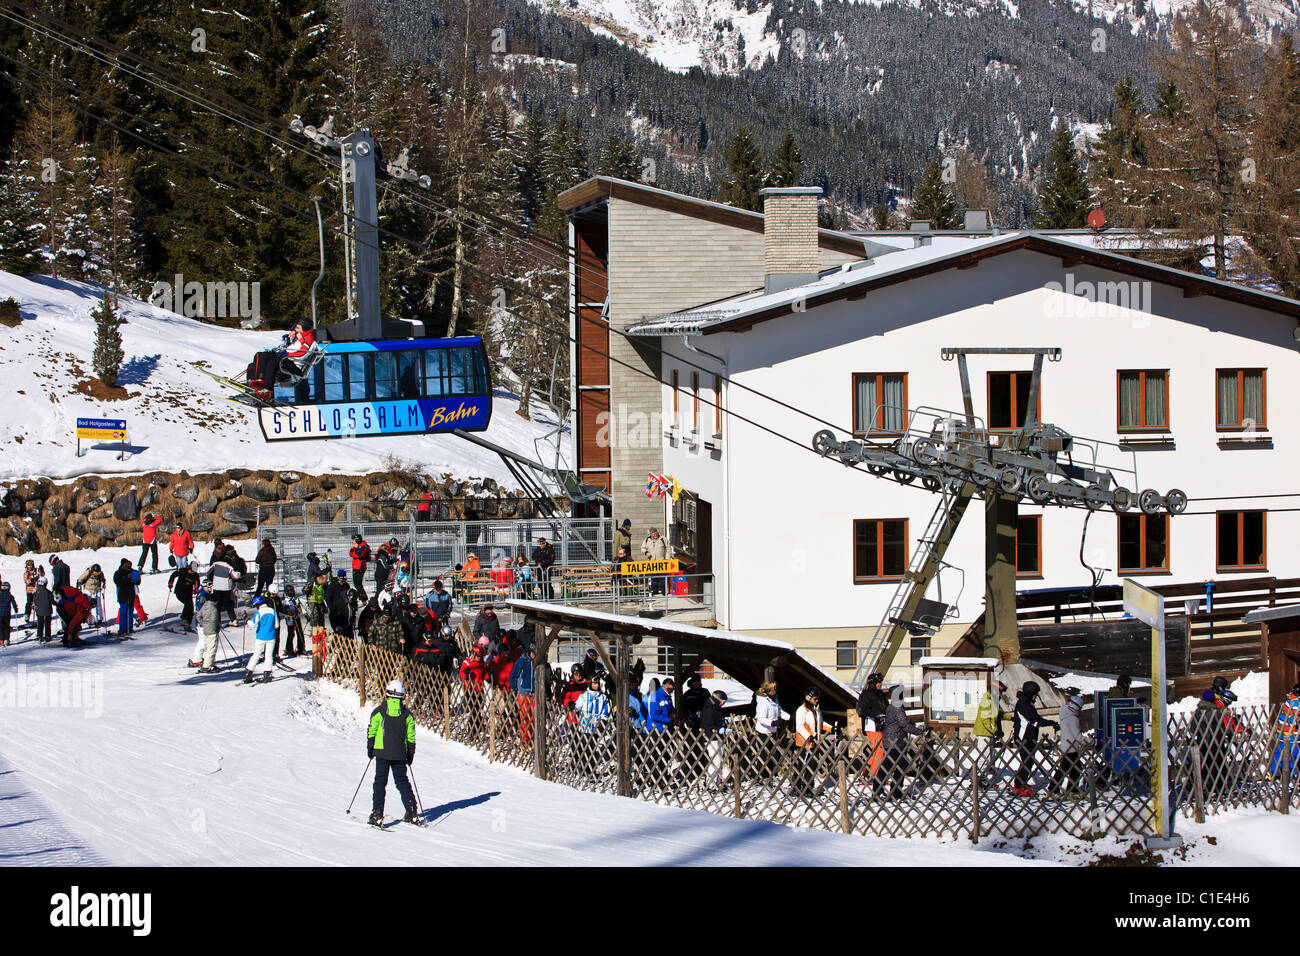 Seilbahn über Skifahrer in Warteschlange am Skilift und Seilbahn Zwischenstation in den österreichischen Alpen. Stockfoto